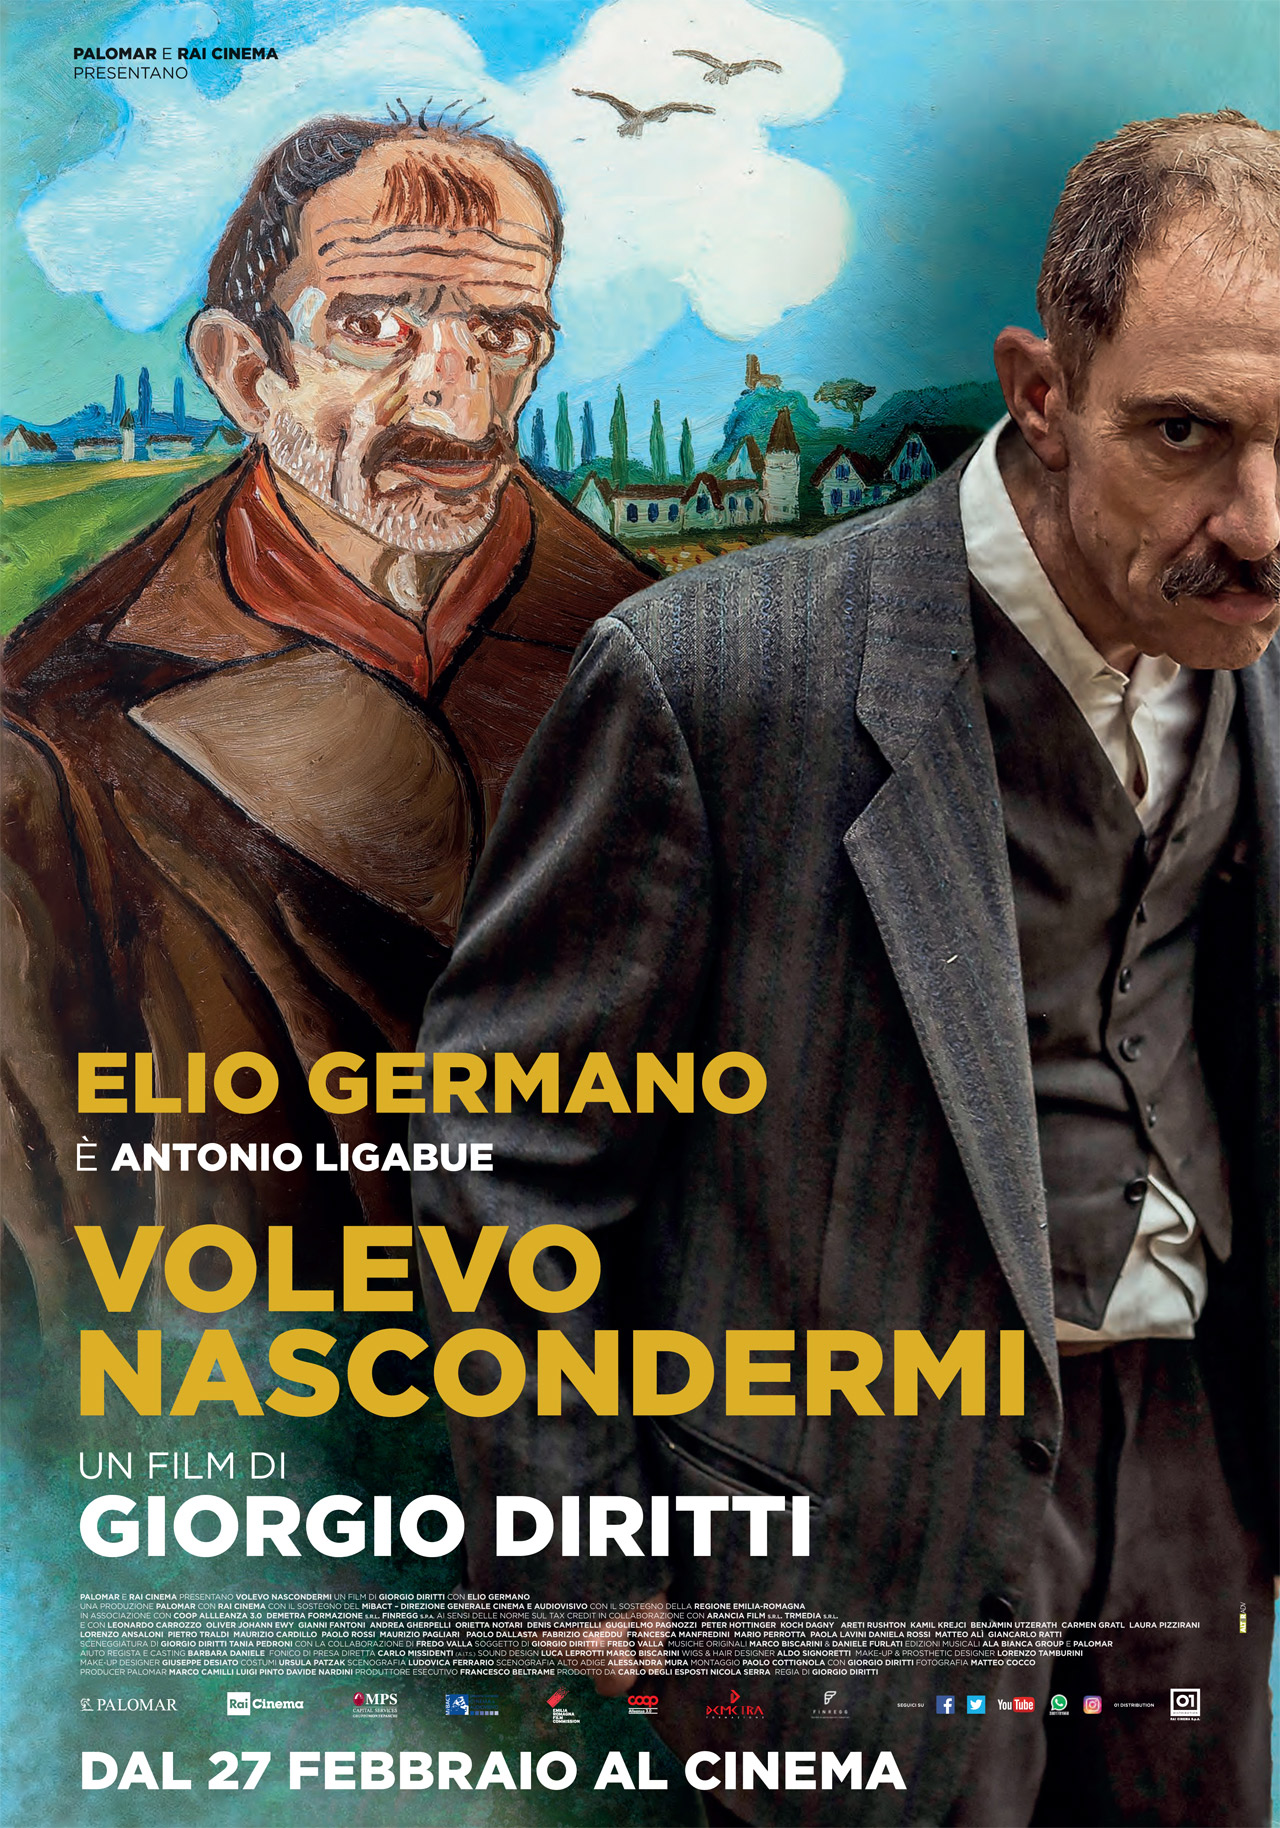 Ecco com'è Elio Germano nei panni di Antonio Ligabue. Il film “Volevo nascondermi” esce il 27 febbraio